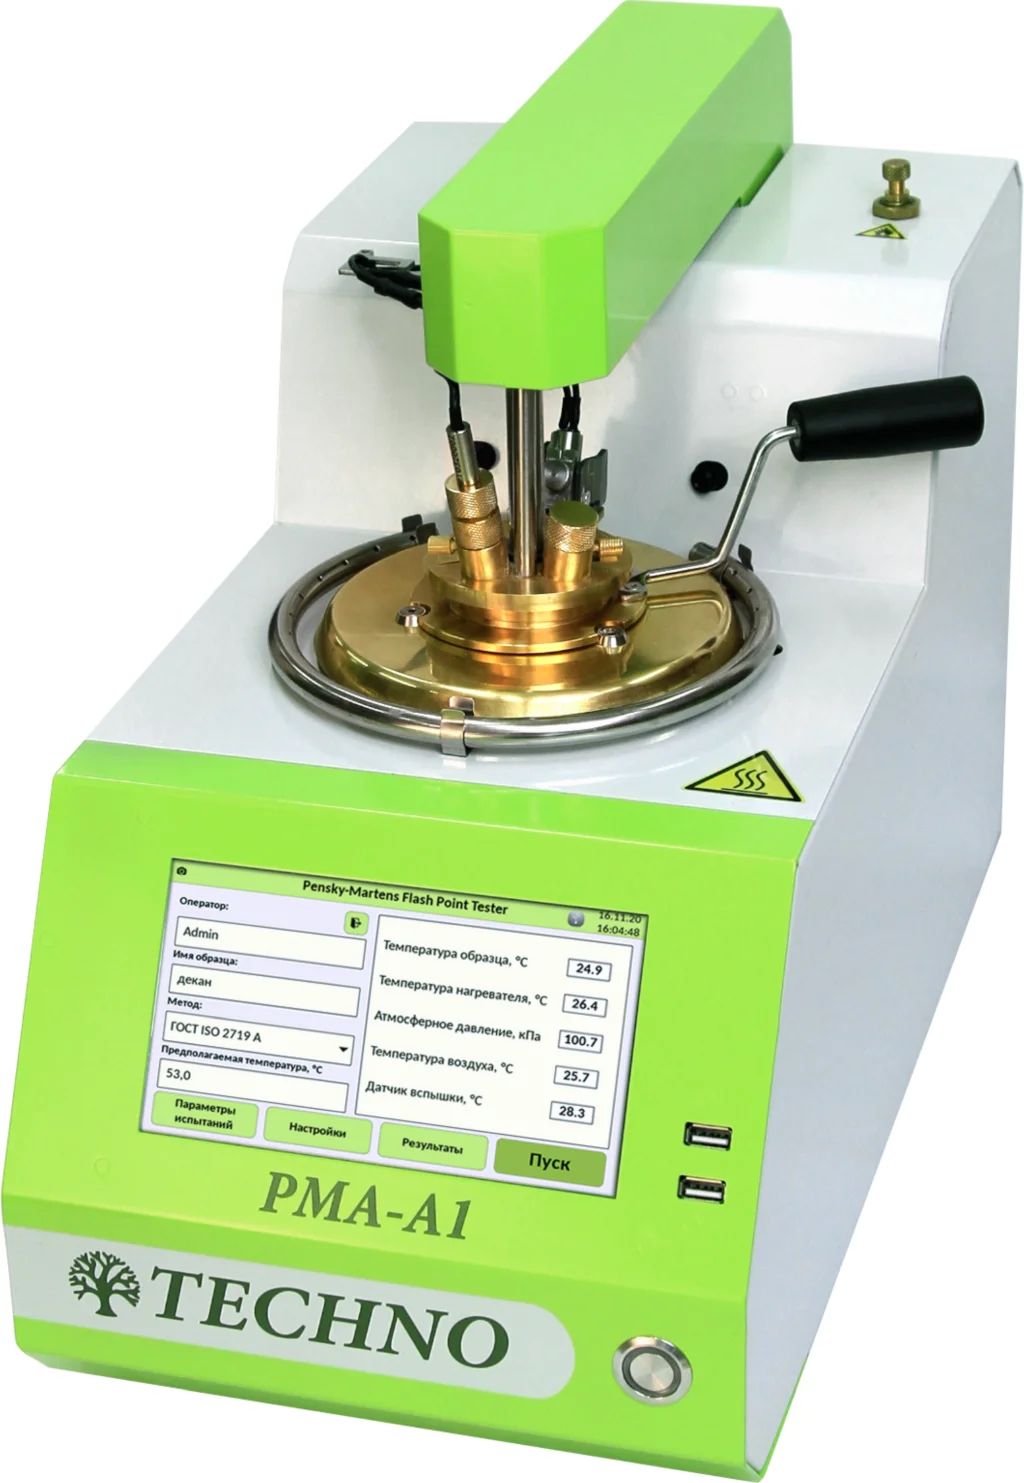 PMA-A1 Автоматический анализатор для определения температуры вспышки нефтепродуктов в закрытом тигле